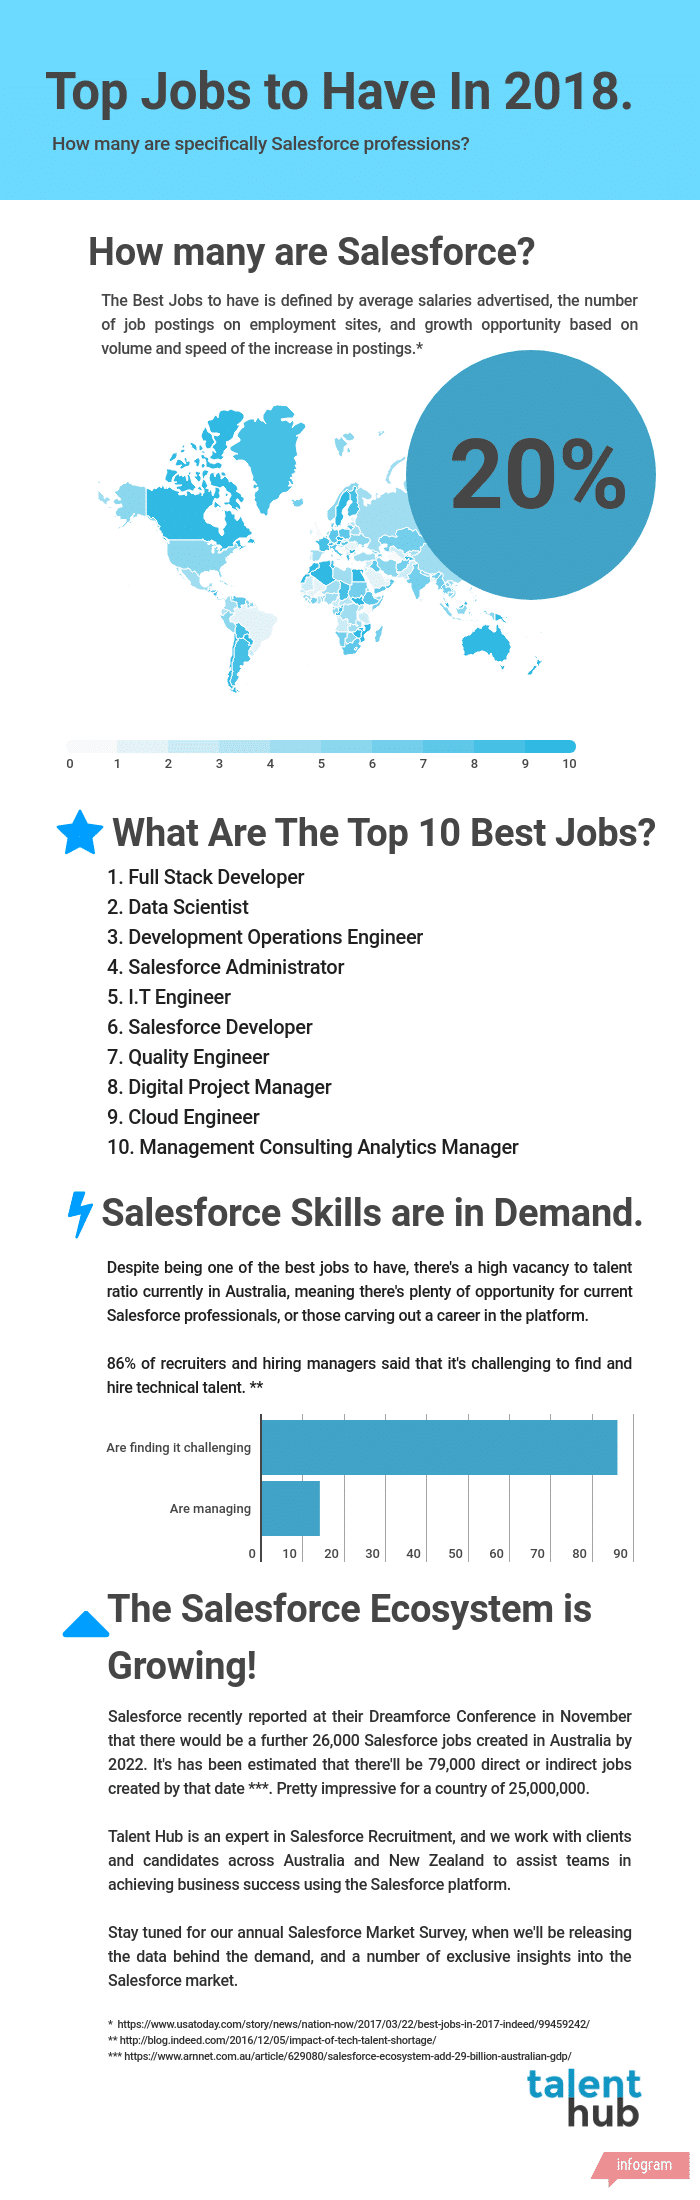 Top 10 Best Jobs